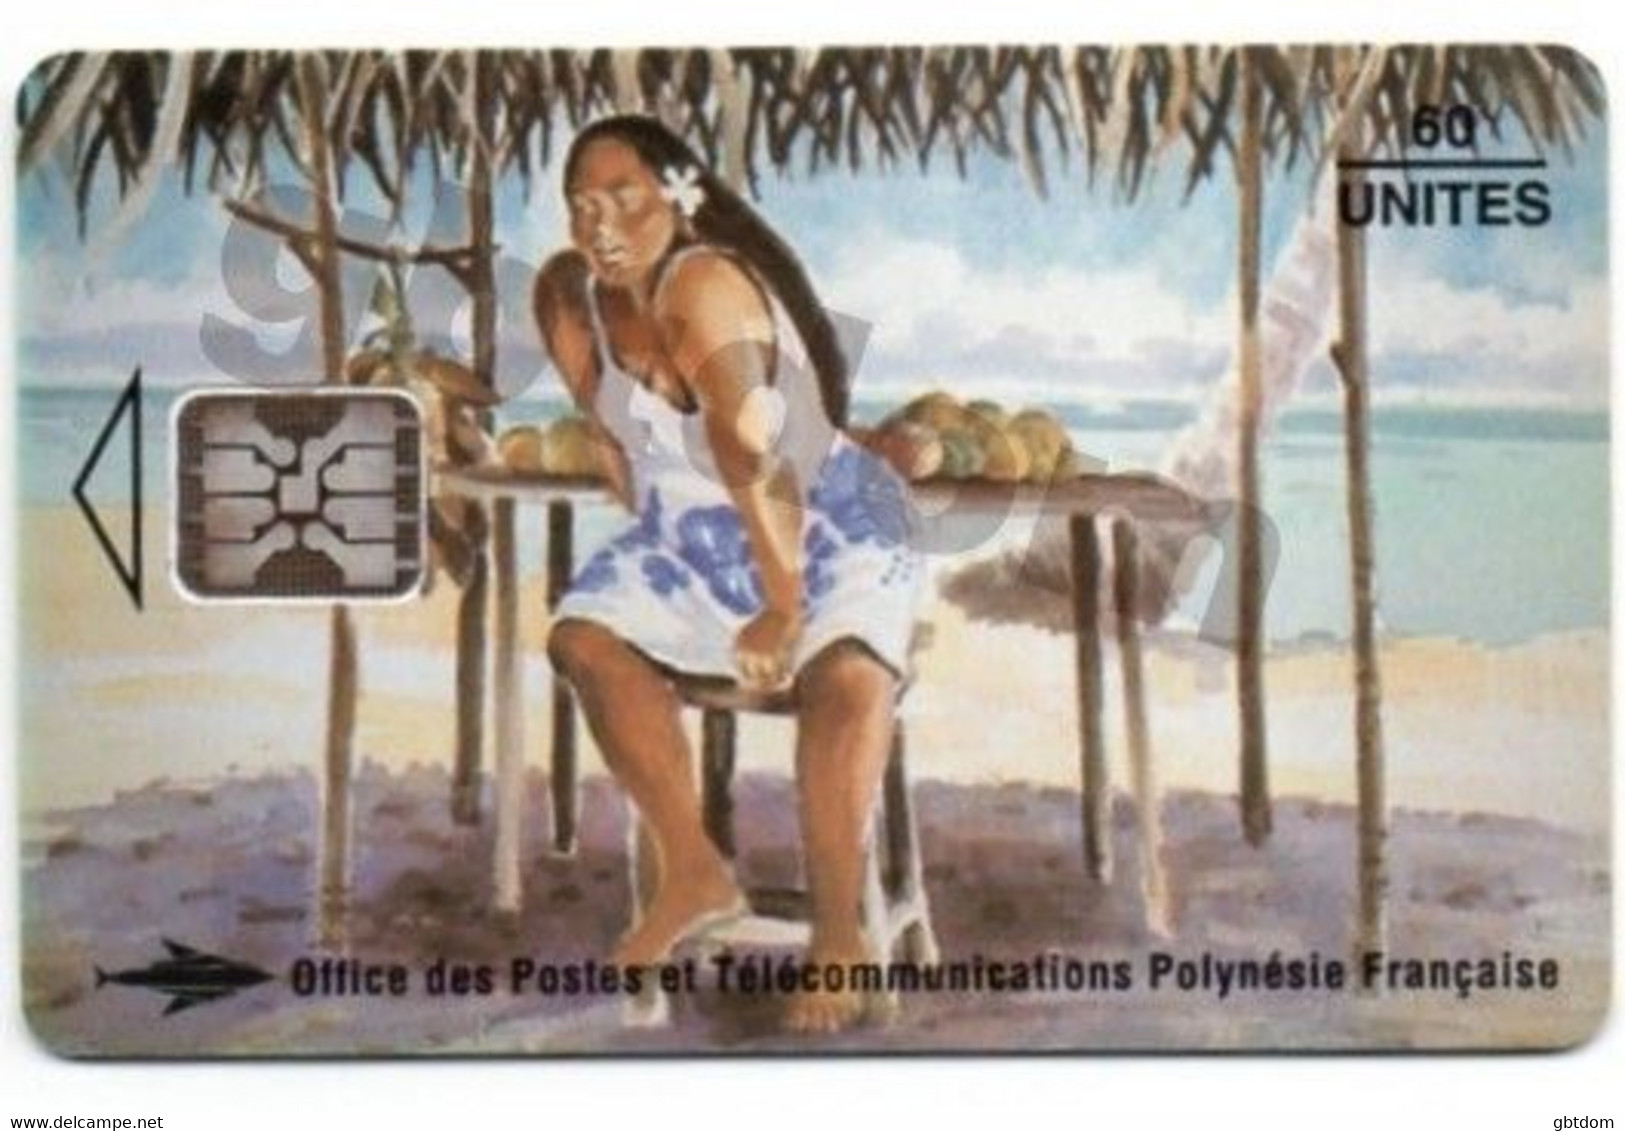 Magnifique Carte Téléphonique De TAHITI Polynésie Française - Vendeuse De Mangues - Erhard Lux - Other - Oceanie